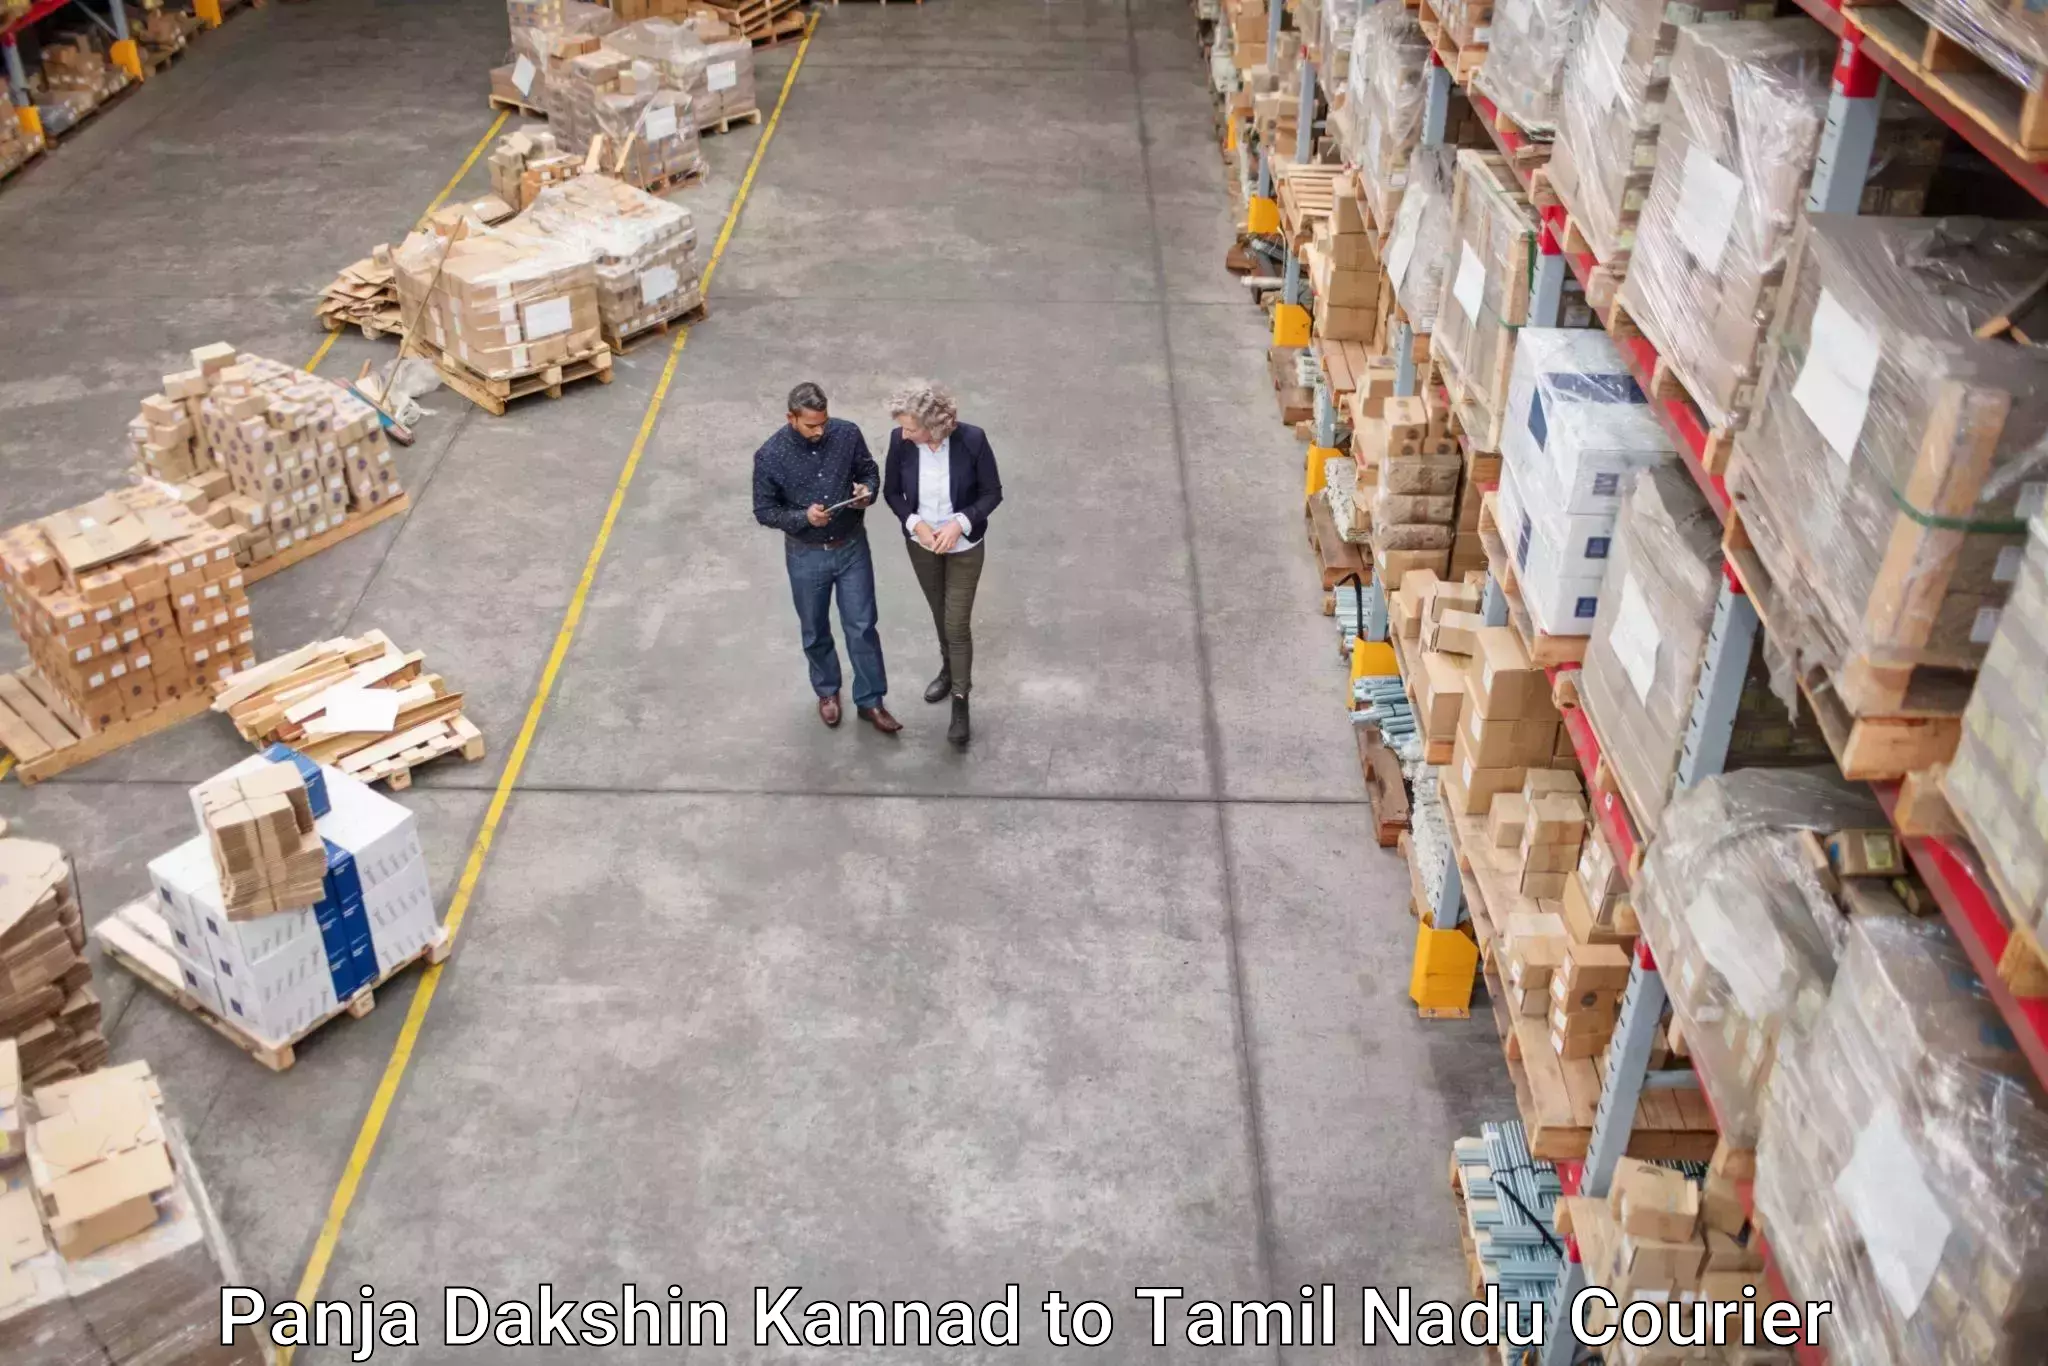 Small parcel delivery Panja Dakshin Kannad to Tiruturaipundi